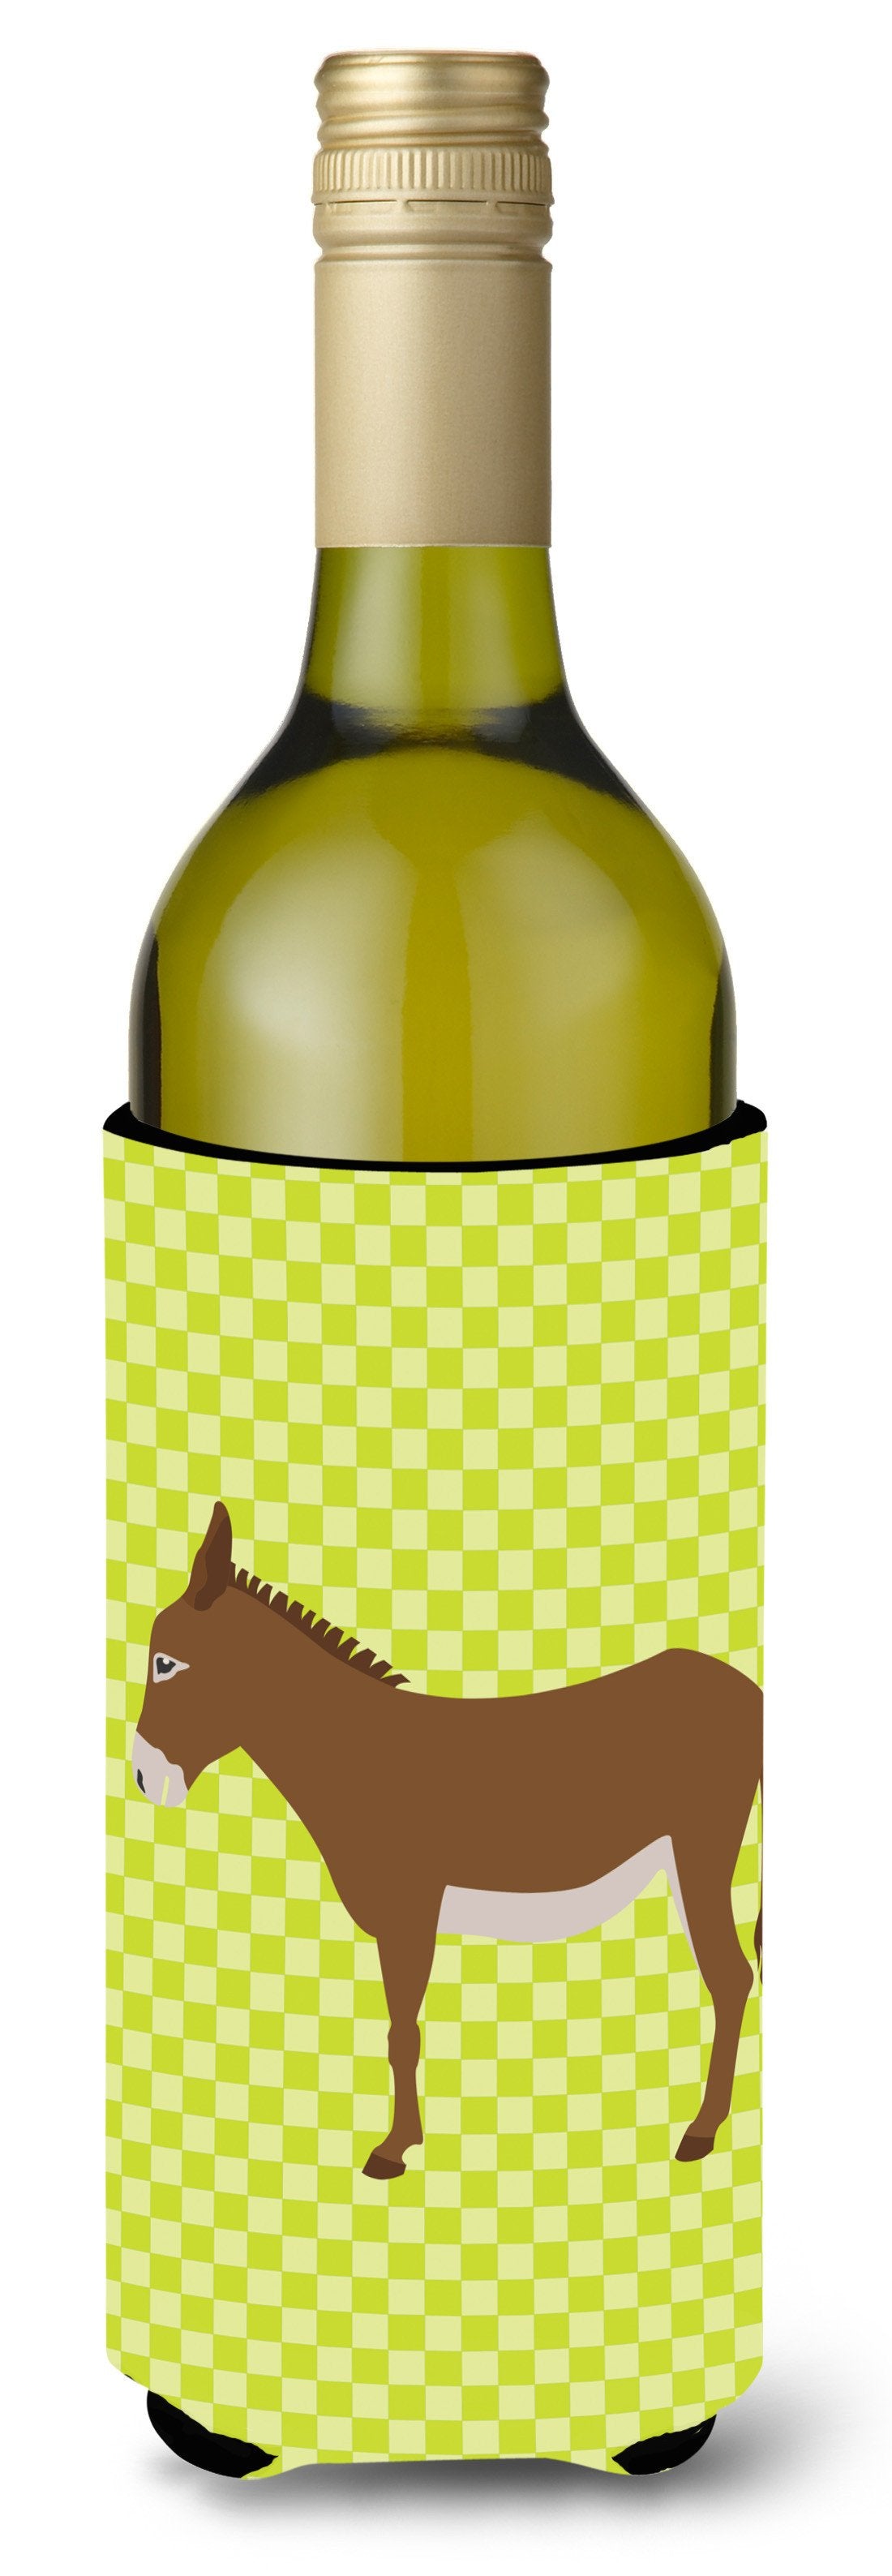 Cotentin Donkey Green Wine Bottle Beverge Insulator Hugger BB7675LITERK by Caroline's Treasures